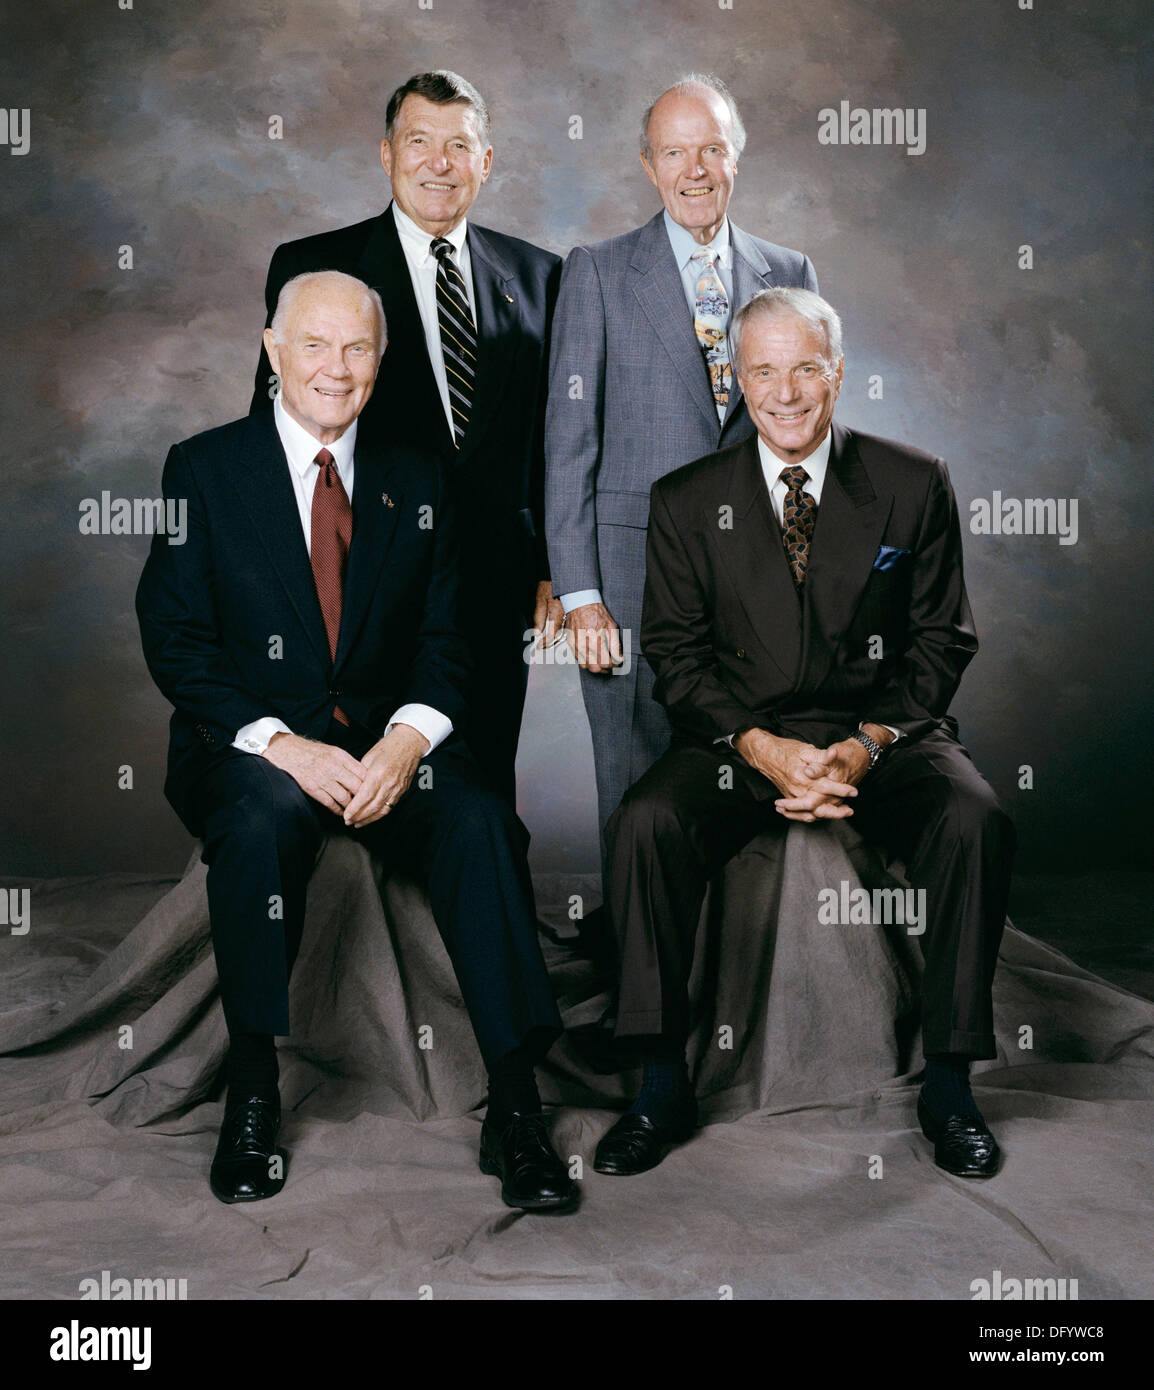 Portrait des quatre autres astronautes 7 Mercure à la réception suivant Alan Shepard's service commémoratif du 5 août 1998. De gauche à droite : John Glenn, Walter Schirra, Gordon Cooper et Scott Carpenter. Carpenter, l'un des sept astronautes de mercure et la deuxième en orbite autour de la terre, mort le 10 octobre 2013 à l'âge de 88. Banque D'Images